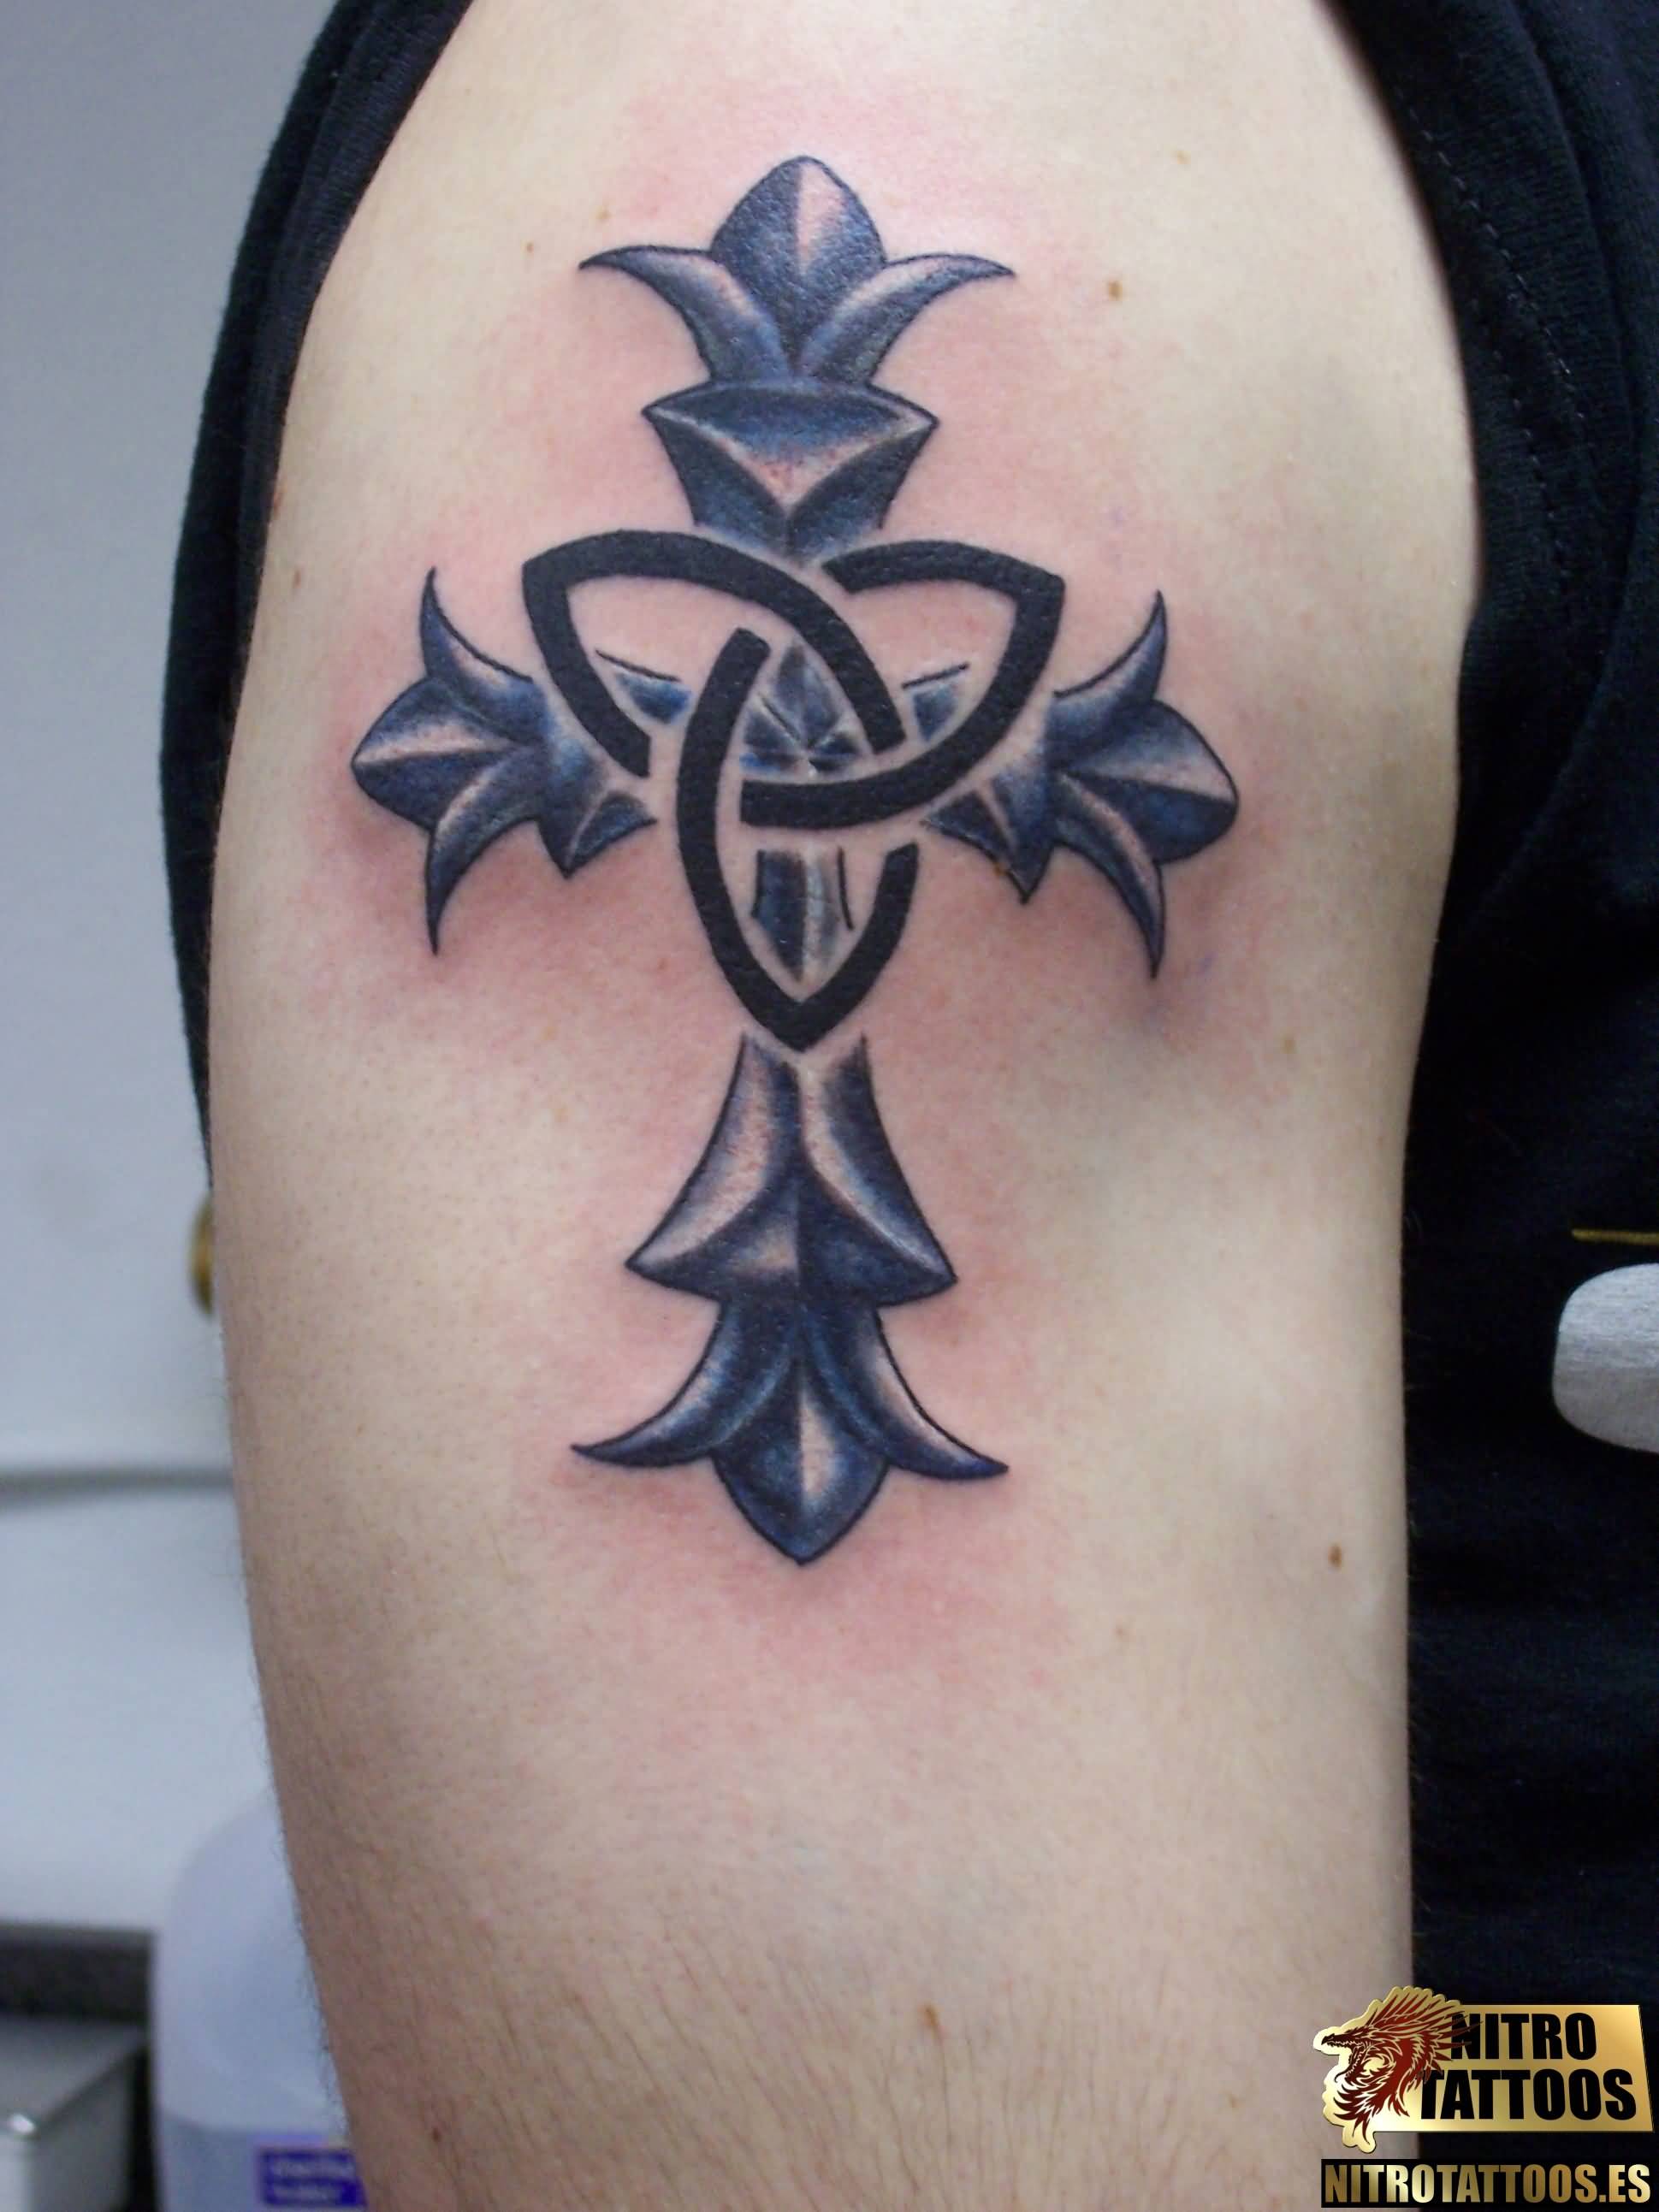 My Tattoo | this is my cross tattoo | natesaffle | Flickr